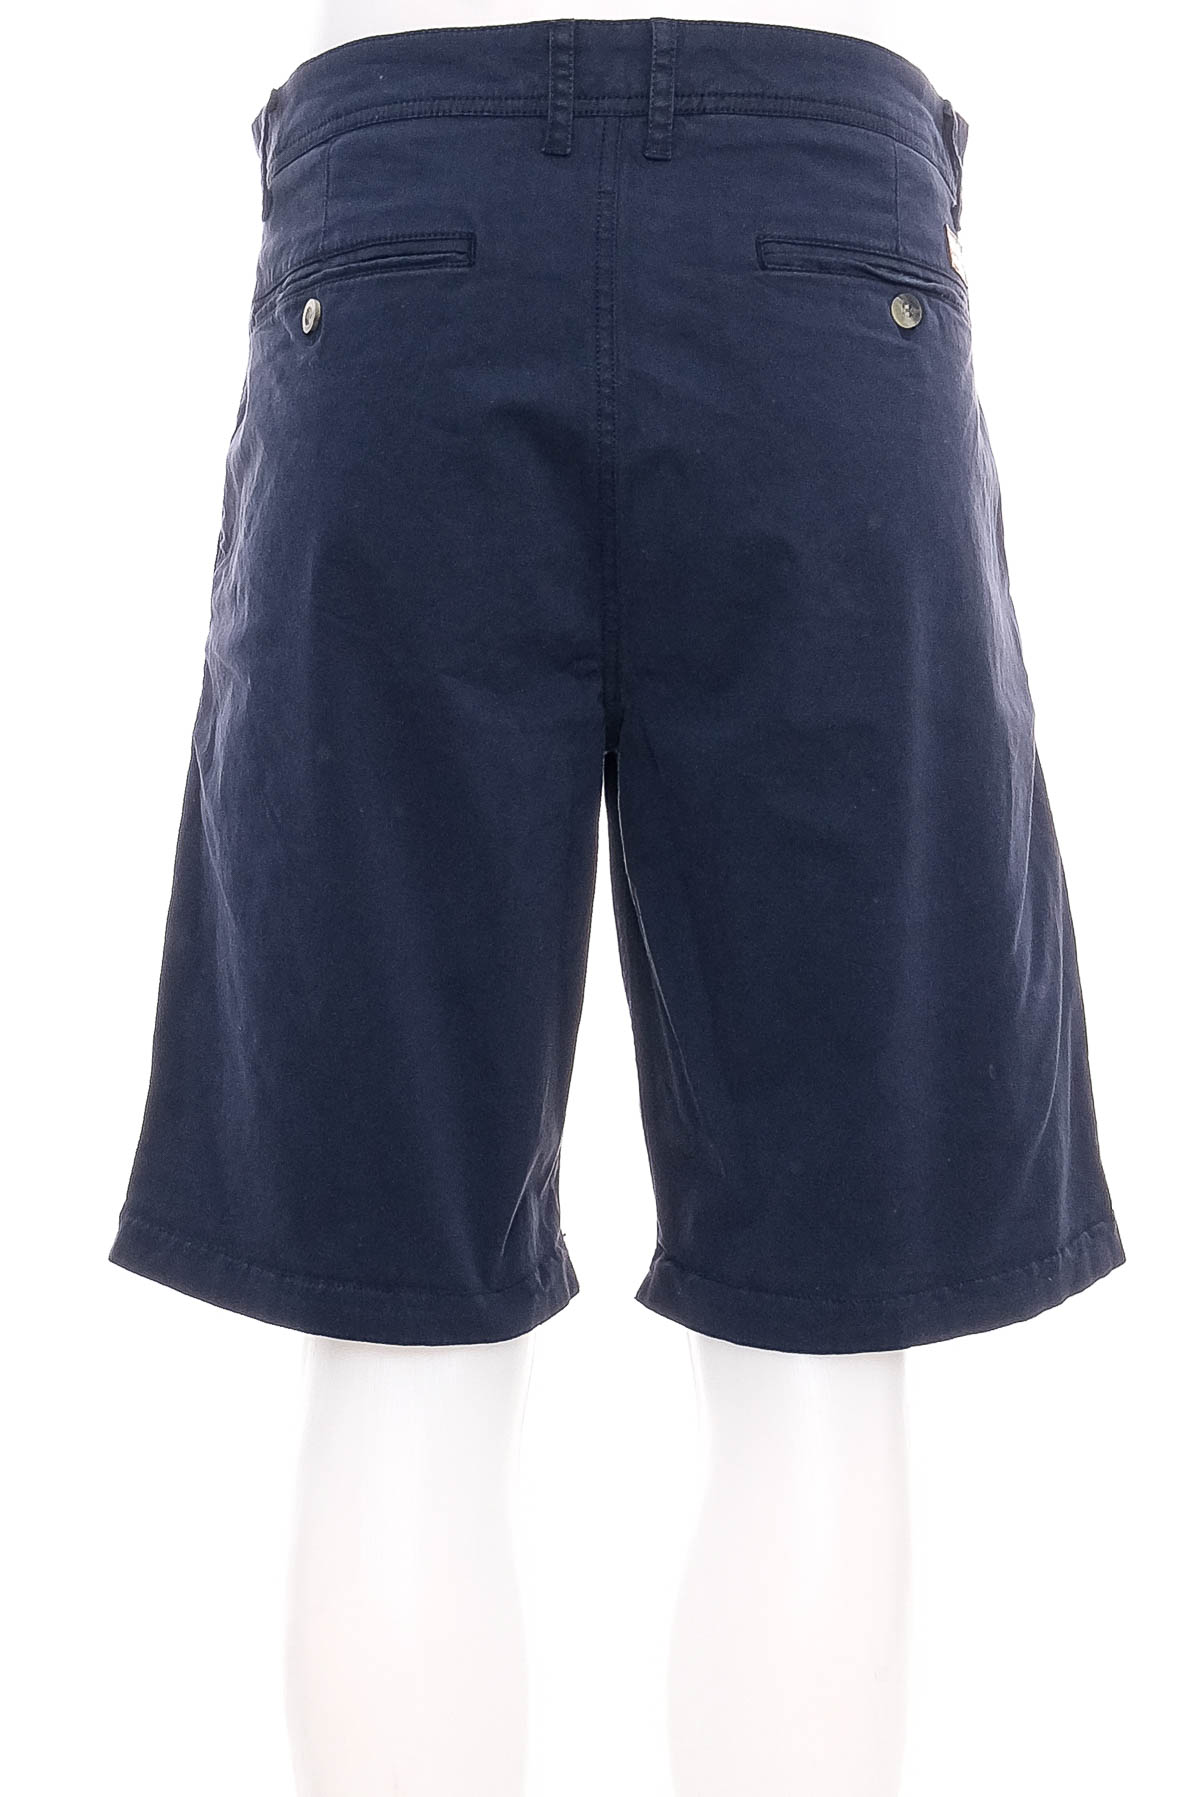 Men's shorts - Sun Valley - 1